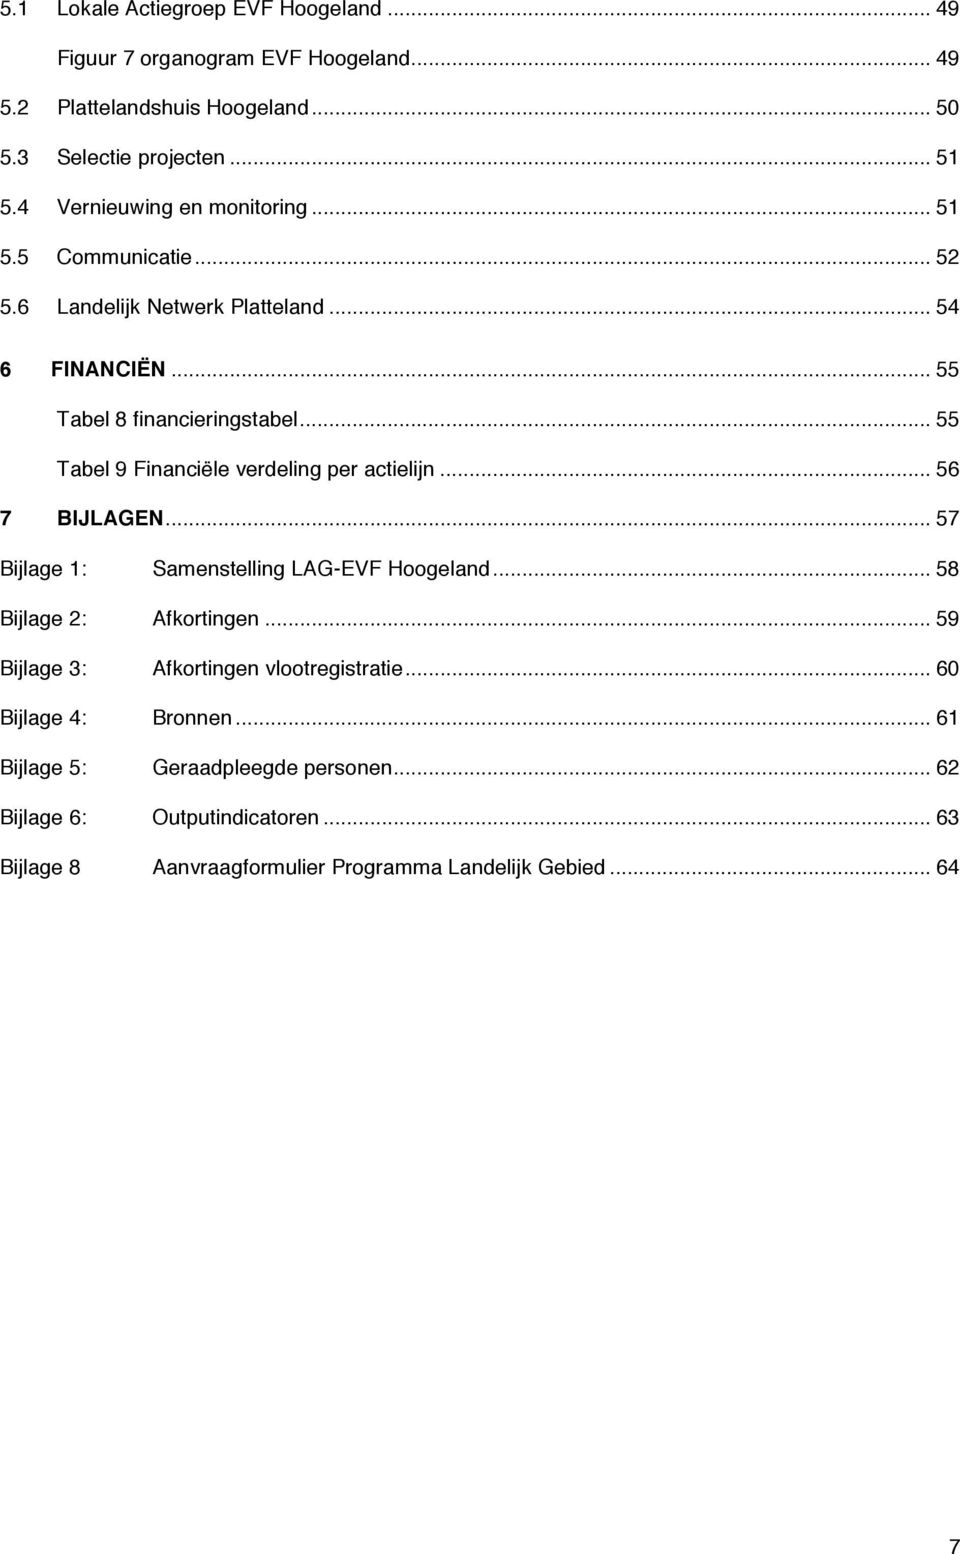 .. 55 Tabel 9 Financiële verdeling per actielijn... 56 7 BIJLAGEN... 57 Bijlage 1: Samenstelling LAG-EVF Hoogeland... 58 Bijlage 2: Afkortingen.